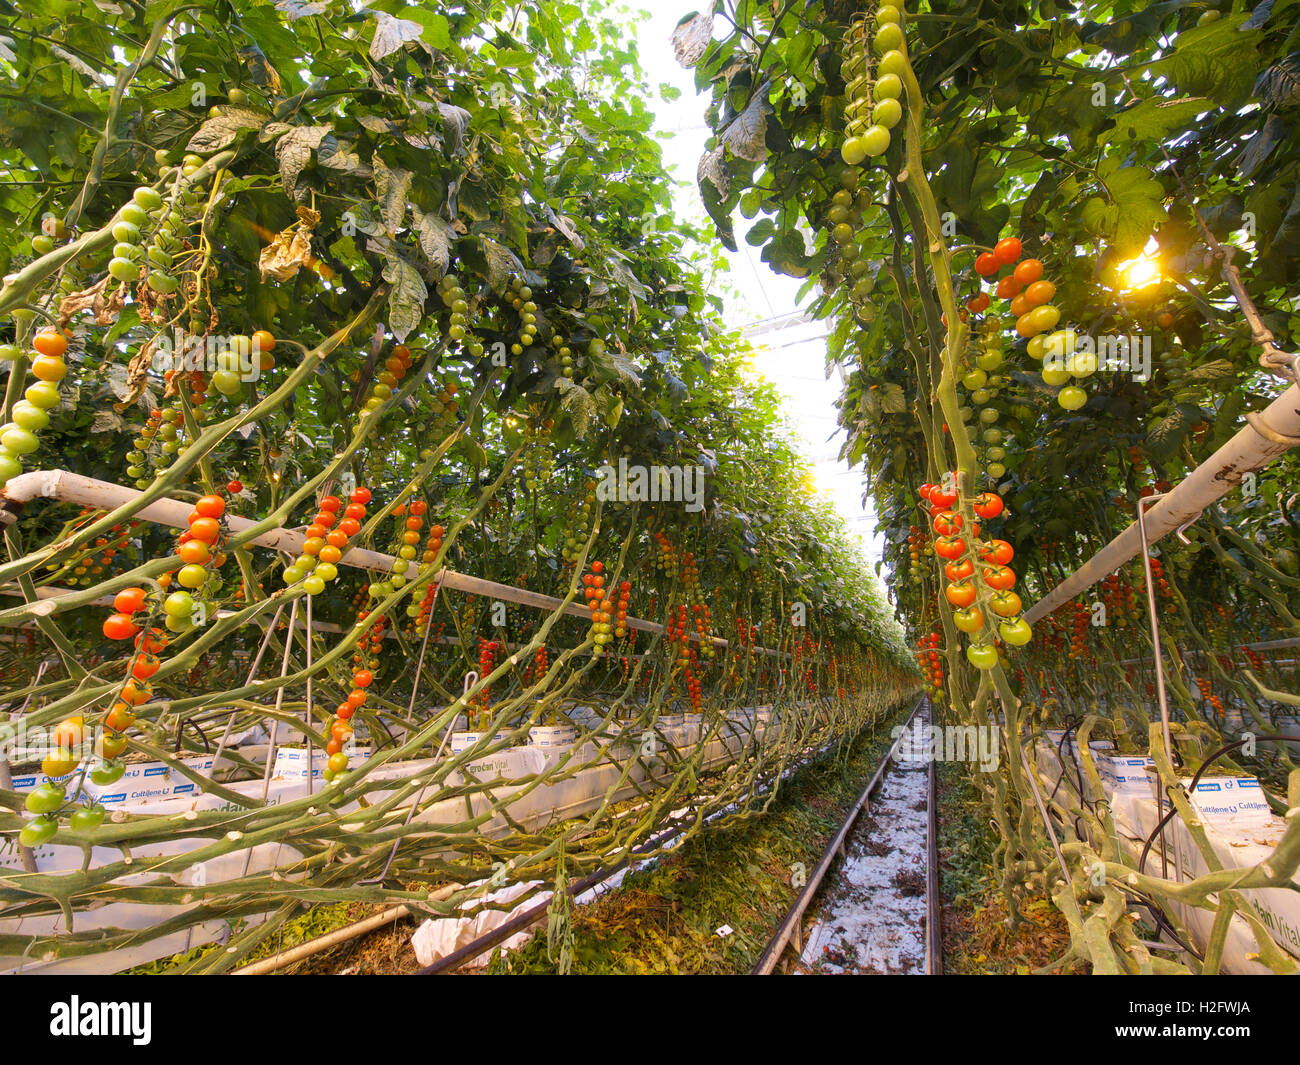 La coltivazione di pomodori in serra su scala industriale, Rilland, Zeeland, Paesi Bassi Foto Stock